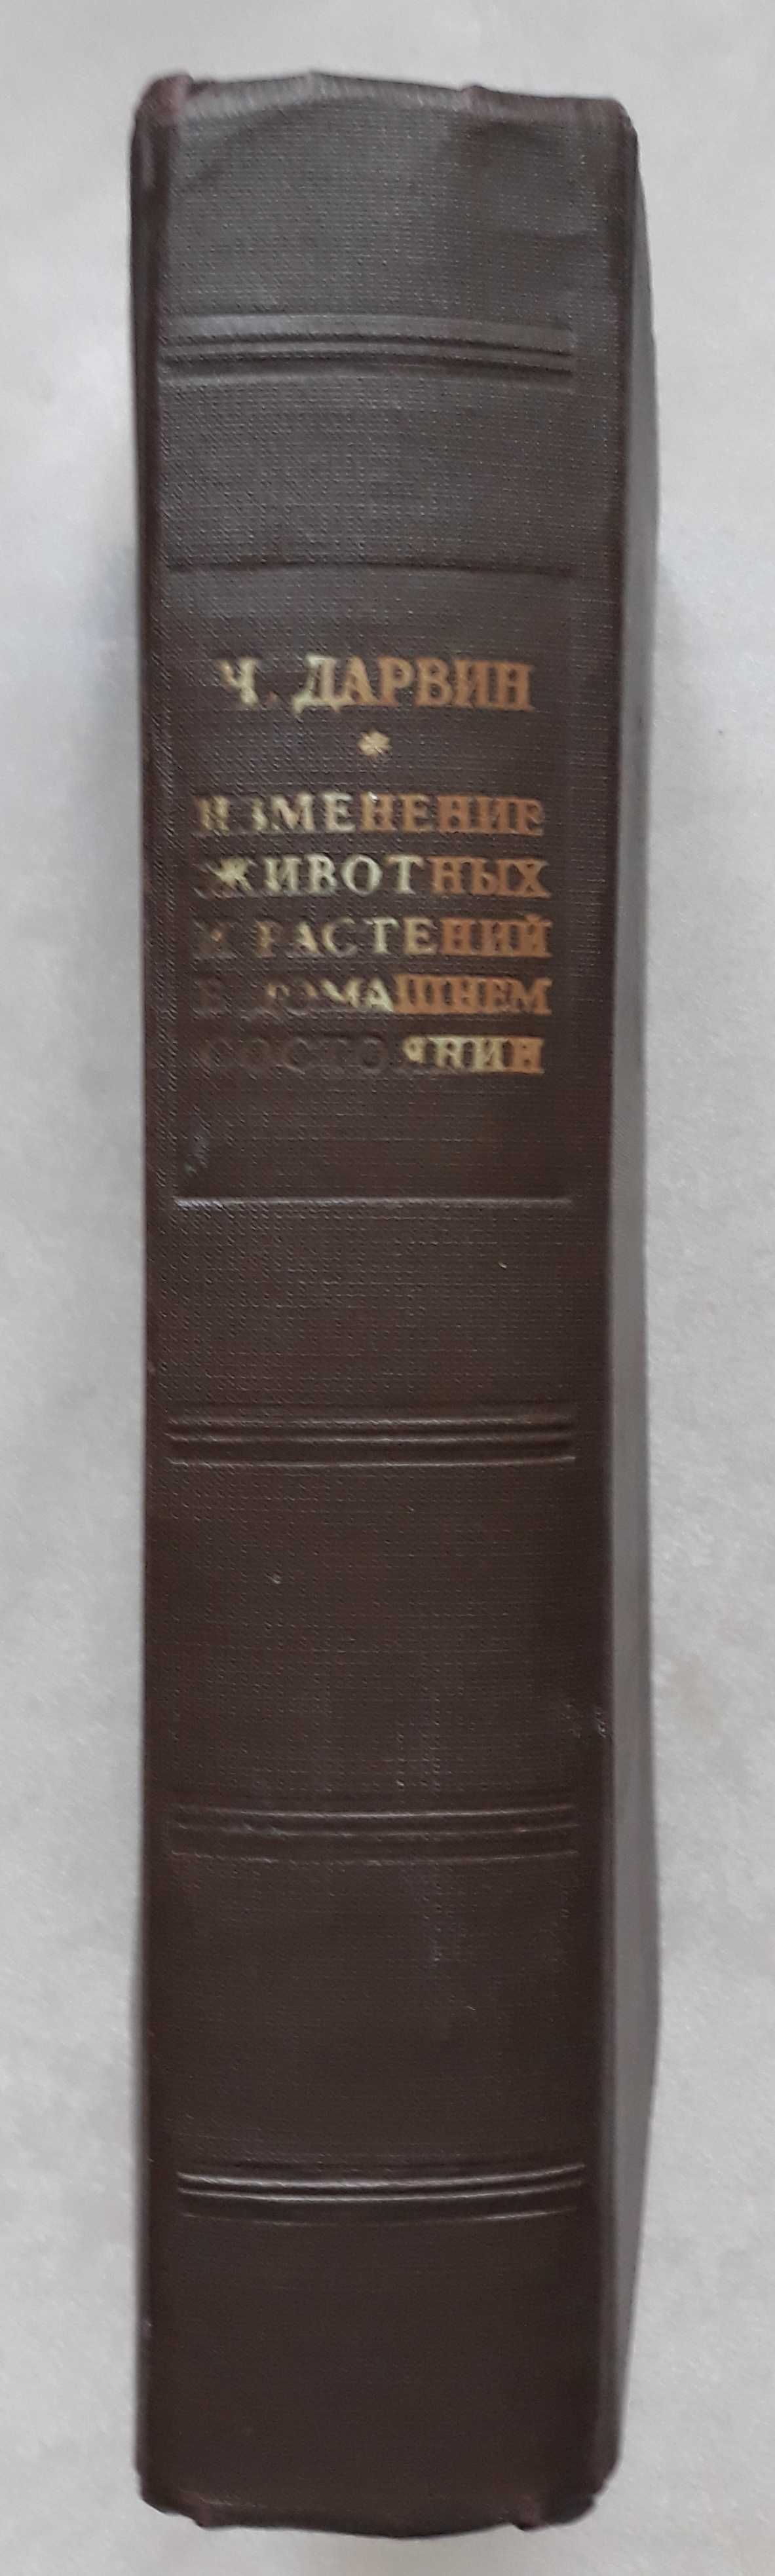 Дарвин Ч. Изменение животных и растений в домашнем состоянии. 1941 г.